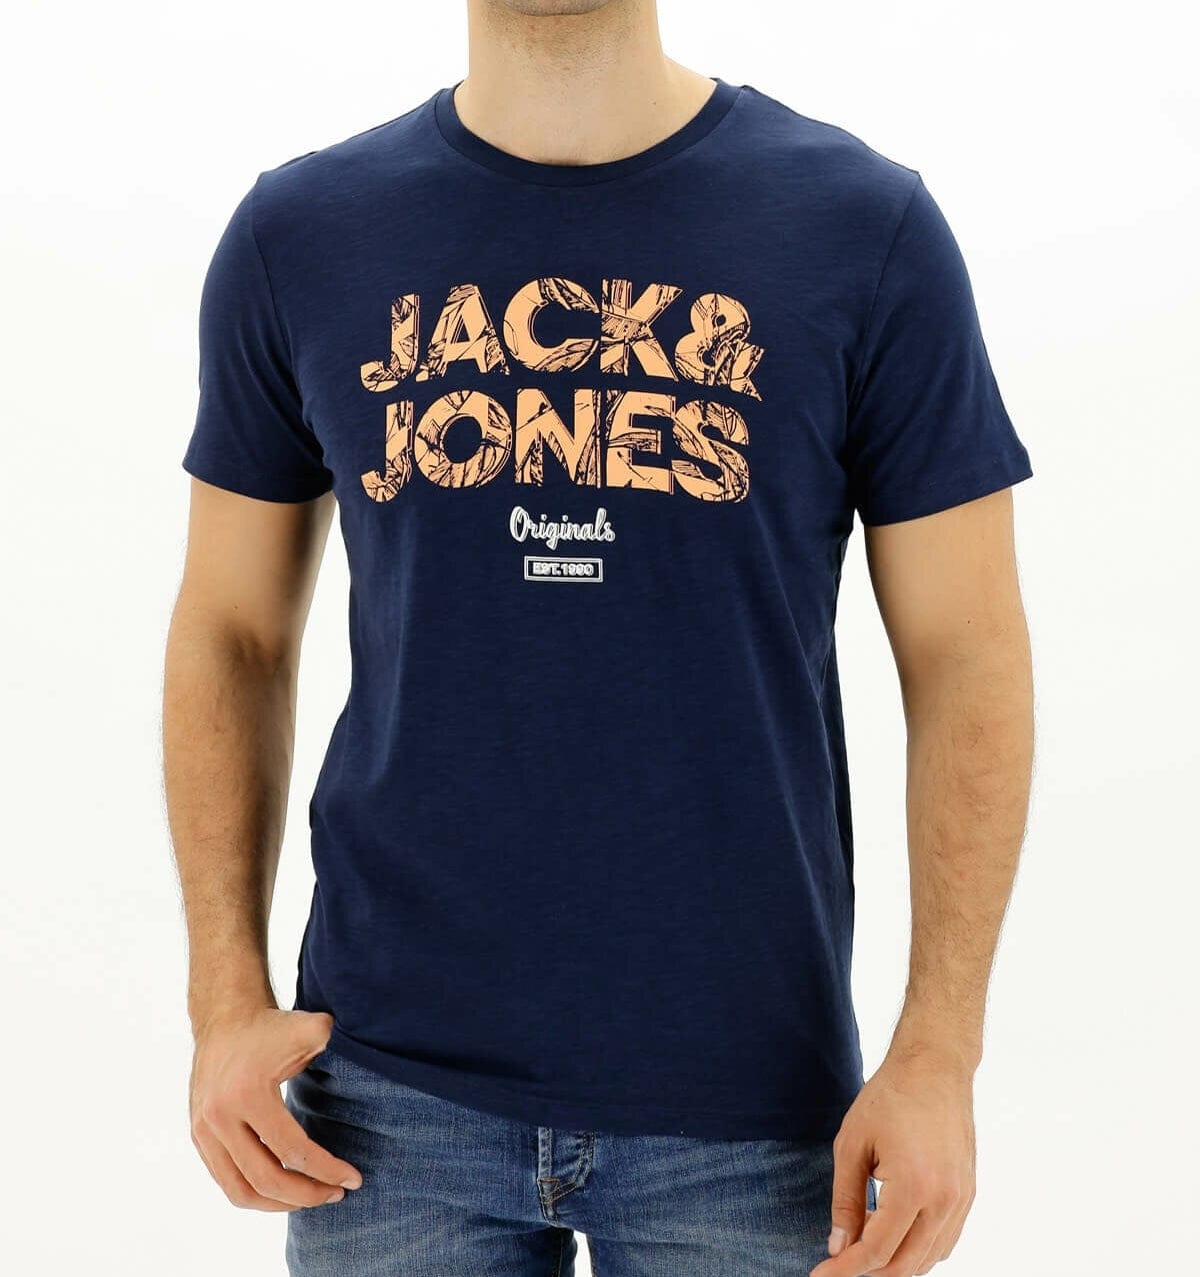 ElOutlet - Men Summer Men T-Shirt L Men J&J Round Tshirt - Dark Blue x Orange